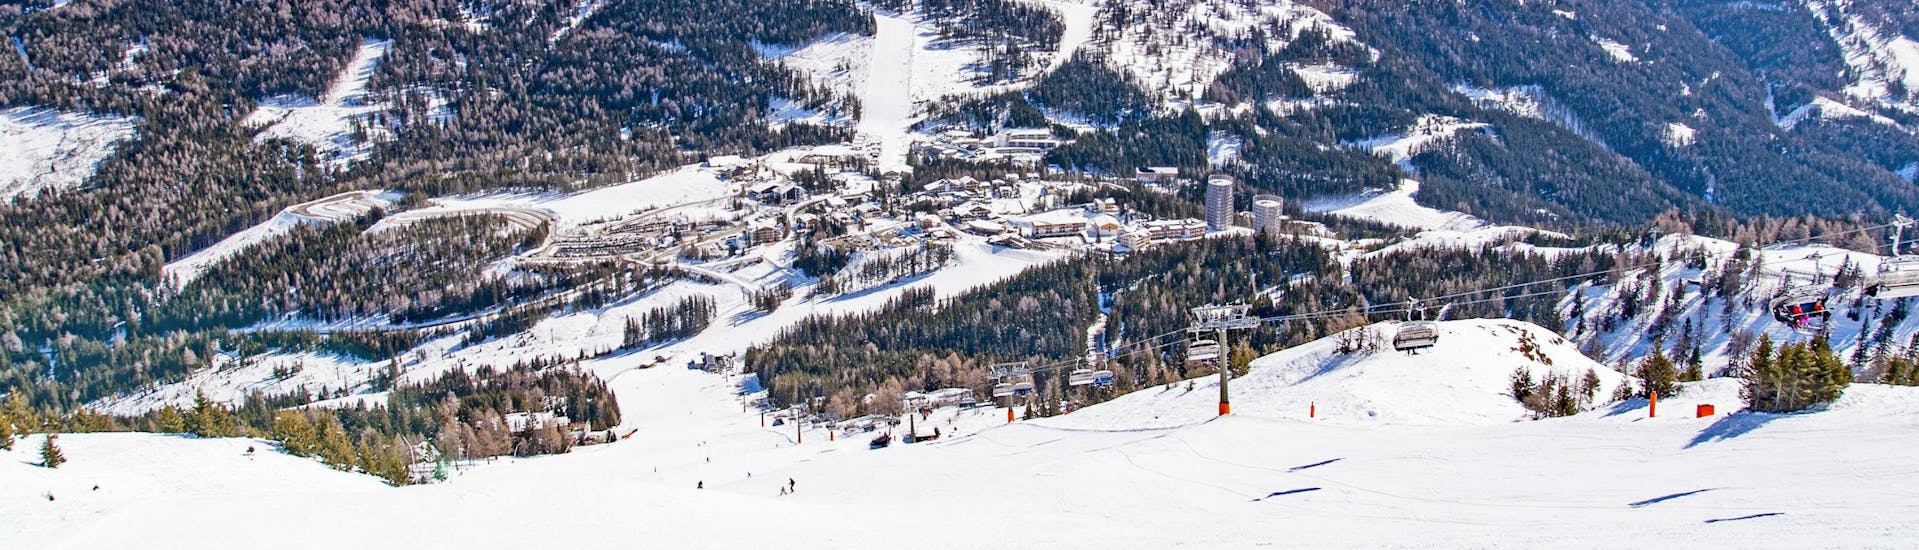 Ein Blick auf die schneebedeckten Pisten am Katschberg in Kärnten, wo Skifahrer mit einer der örtlichen Skischulen einen Skikurs buchen können.